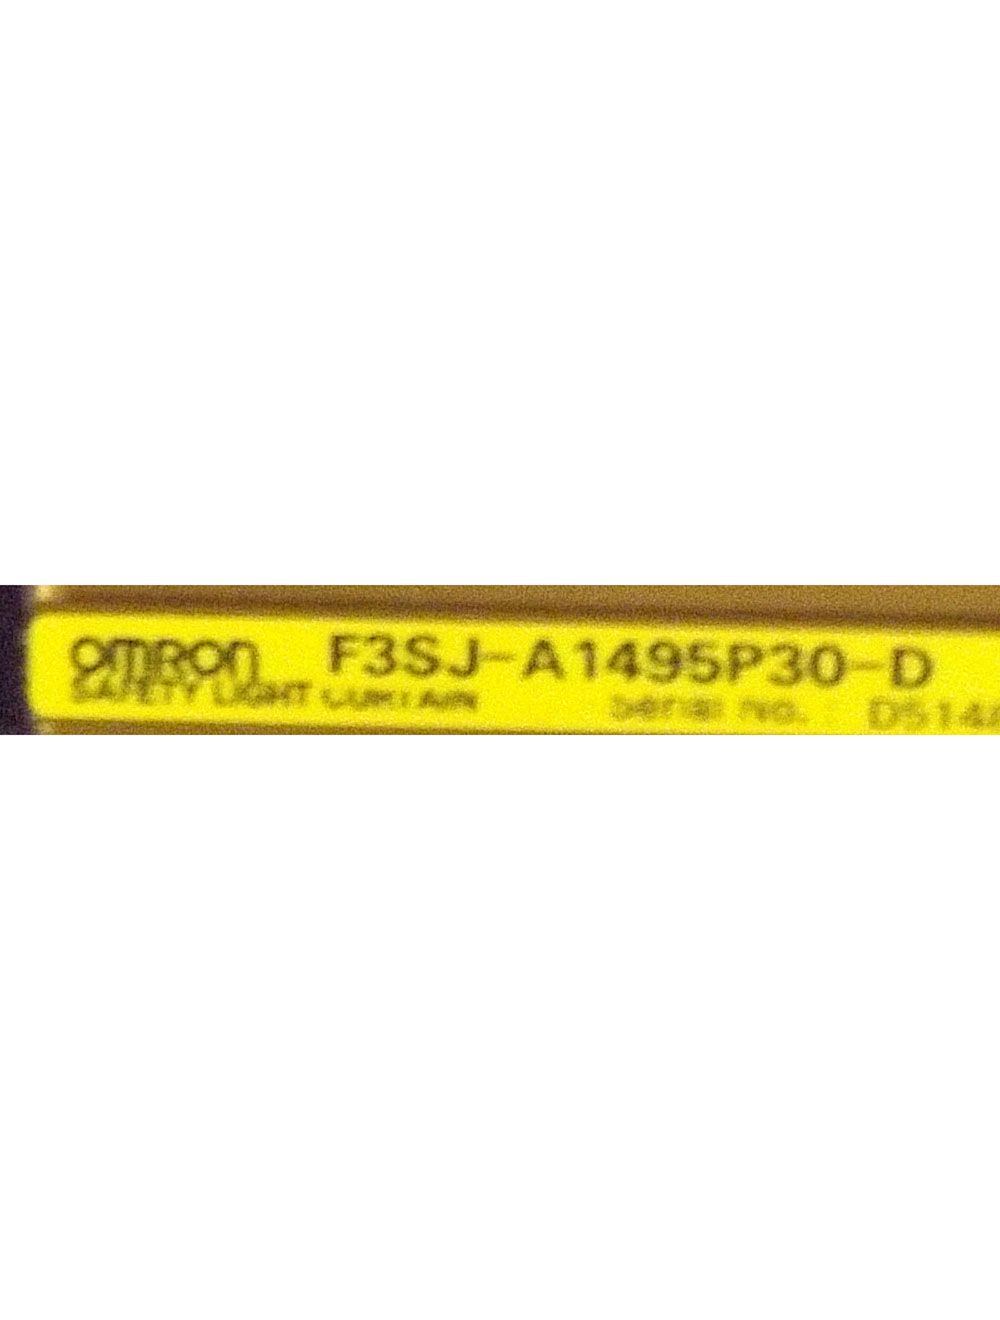 Omron Light Curtain F3SJ-A1495P30 F3SJ-A1495P30-D F3SJ-A1495P30-L